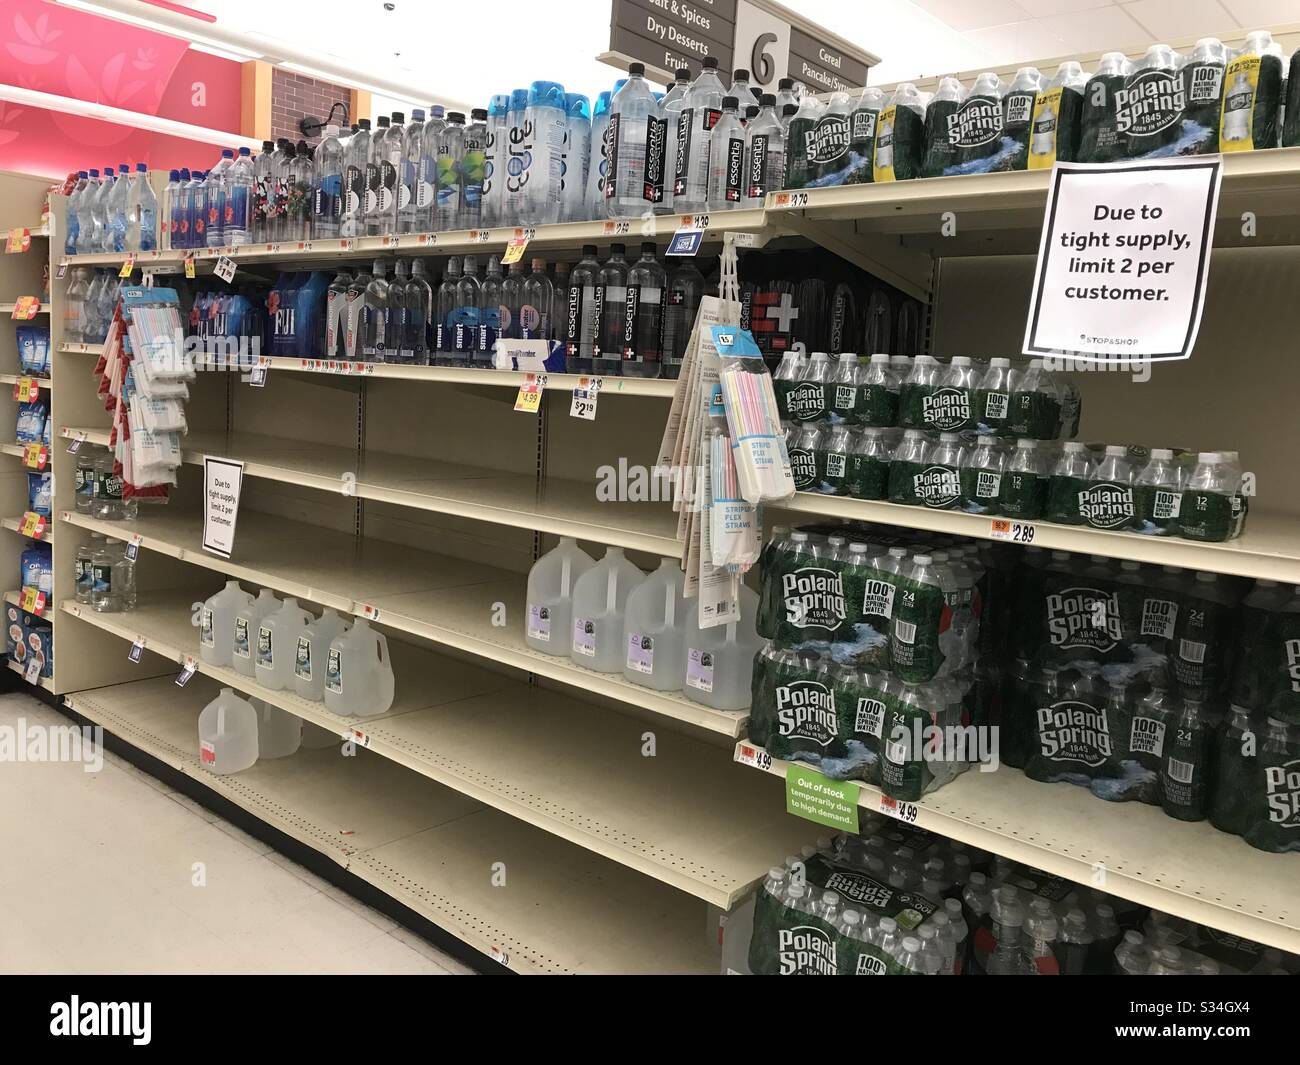 Approvisionnement limité en eau au supermarché pendant la crise du coronavirus au New Jersey, États-Unis Banque D'Images